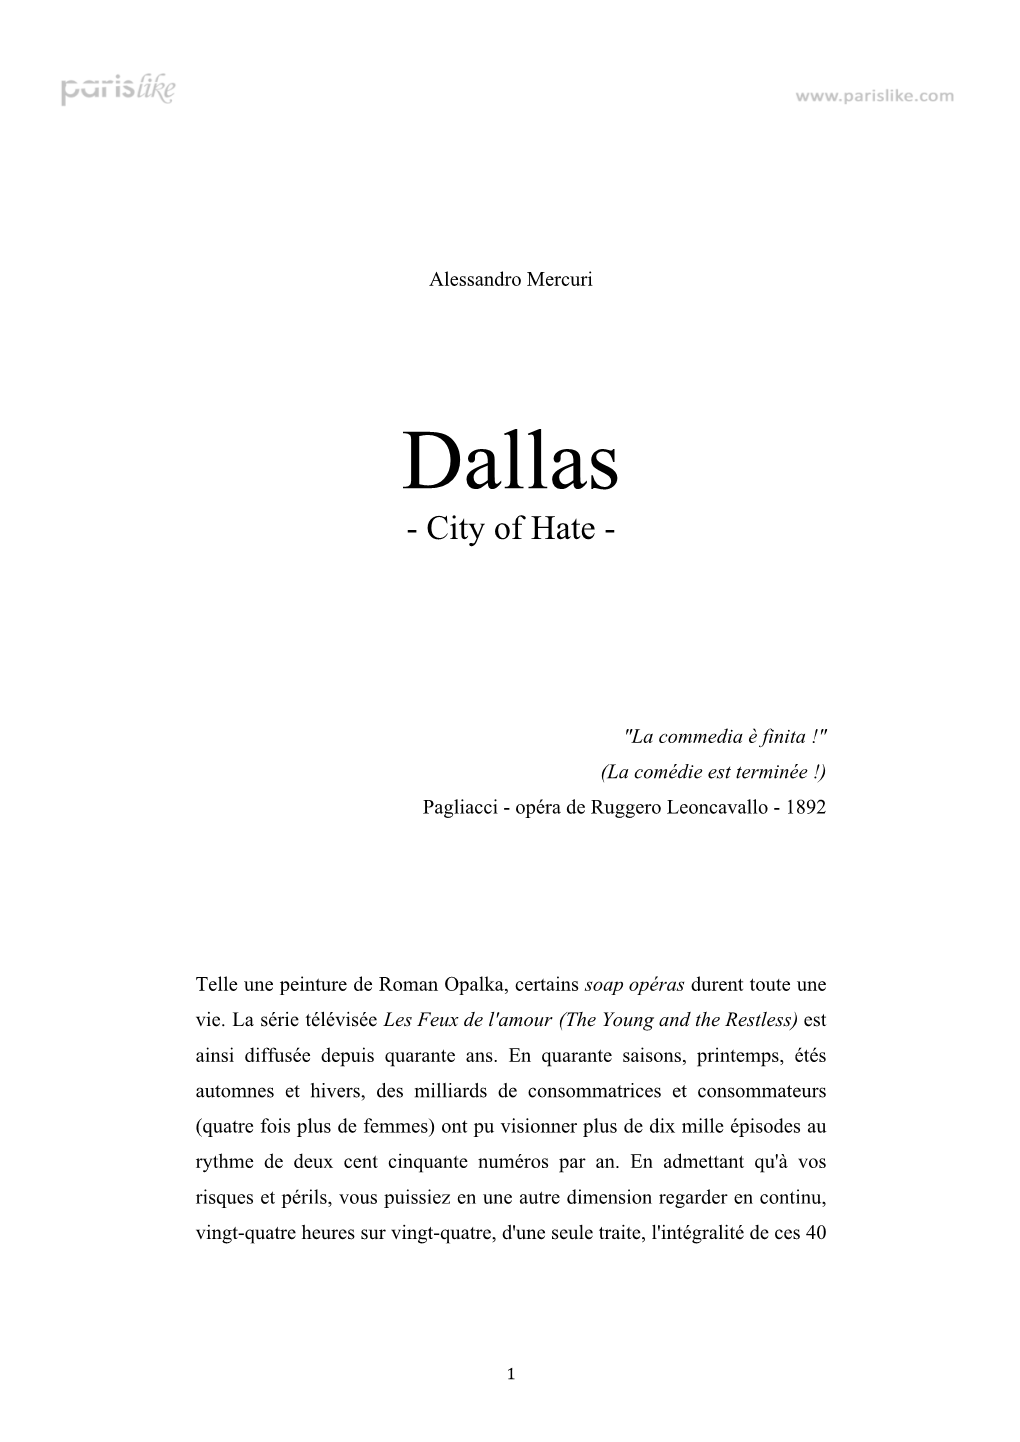 Dallas, City of Hate